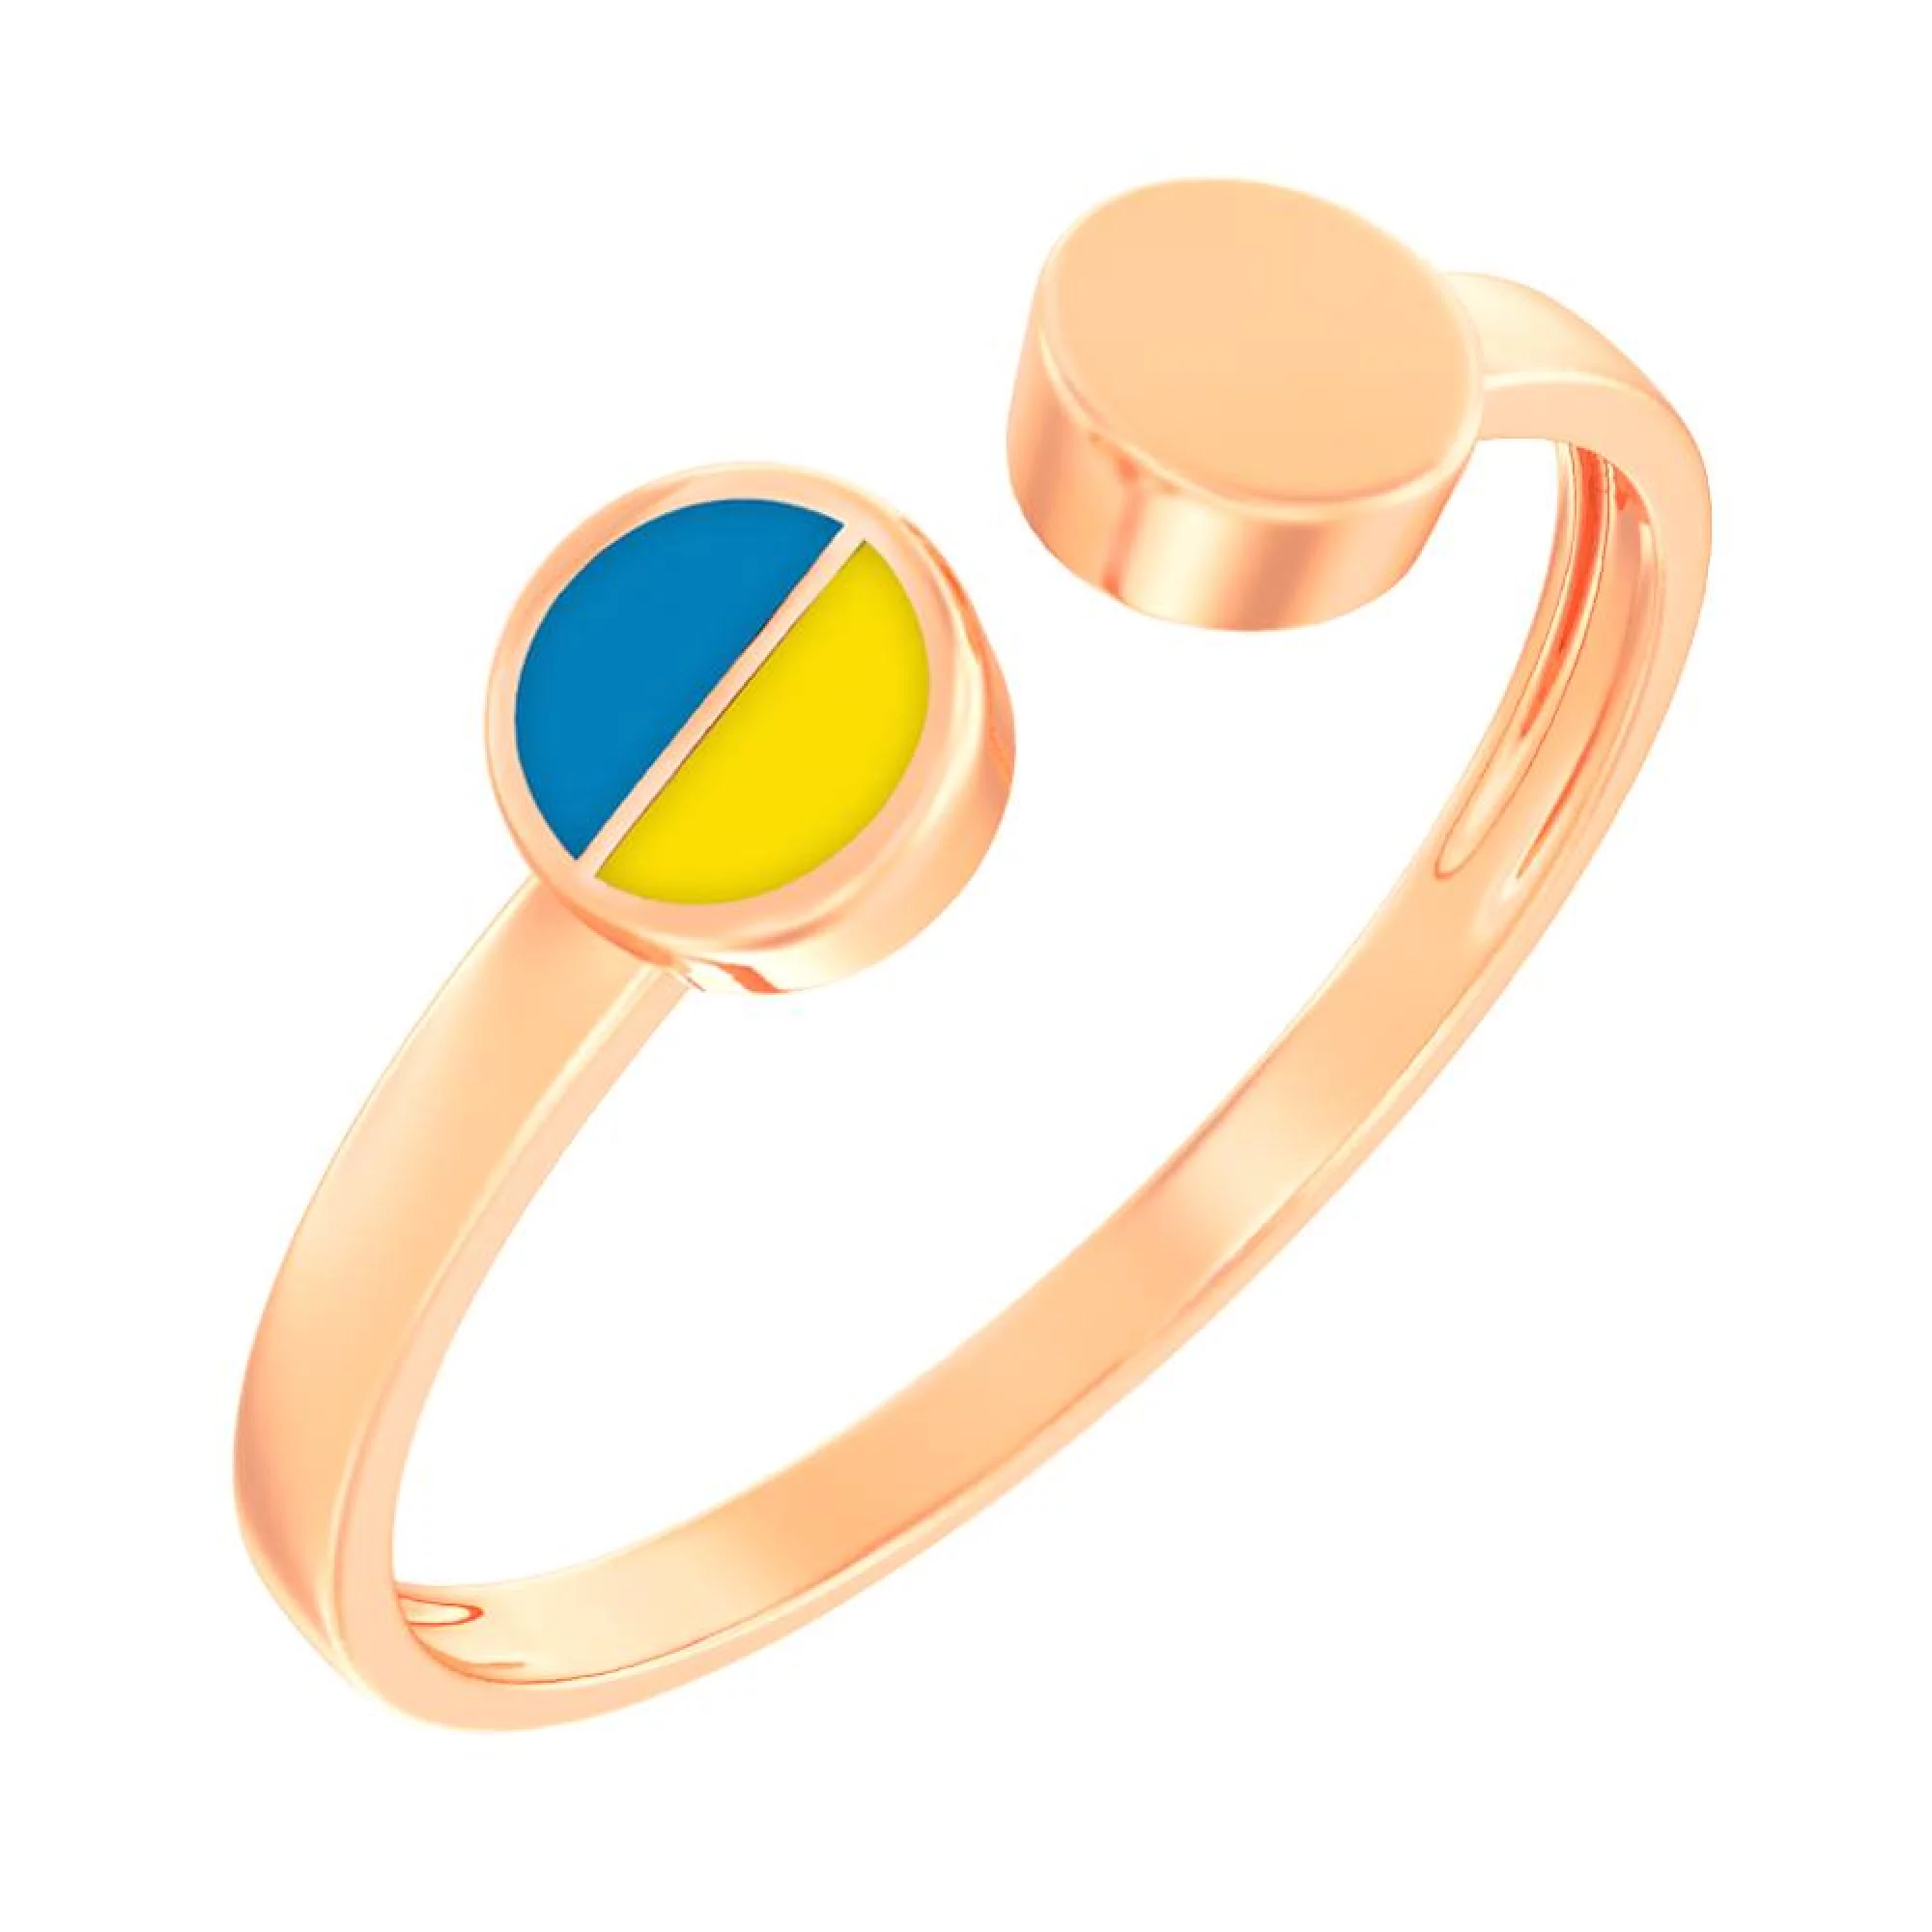 Кольцо из красного золота с сине-желтой эмалью  - 1513825 – изображение 1